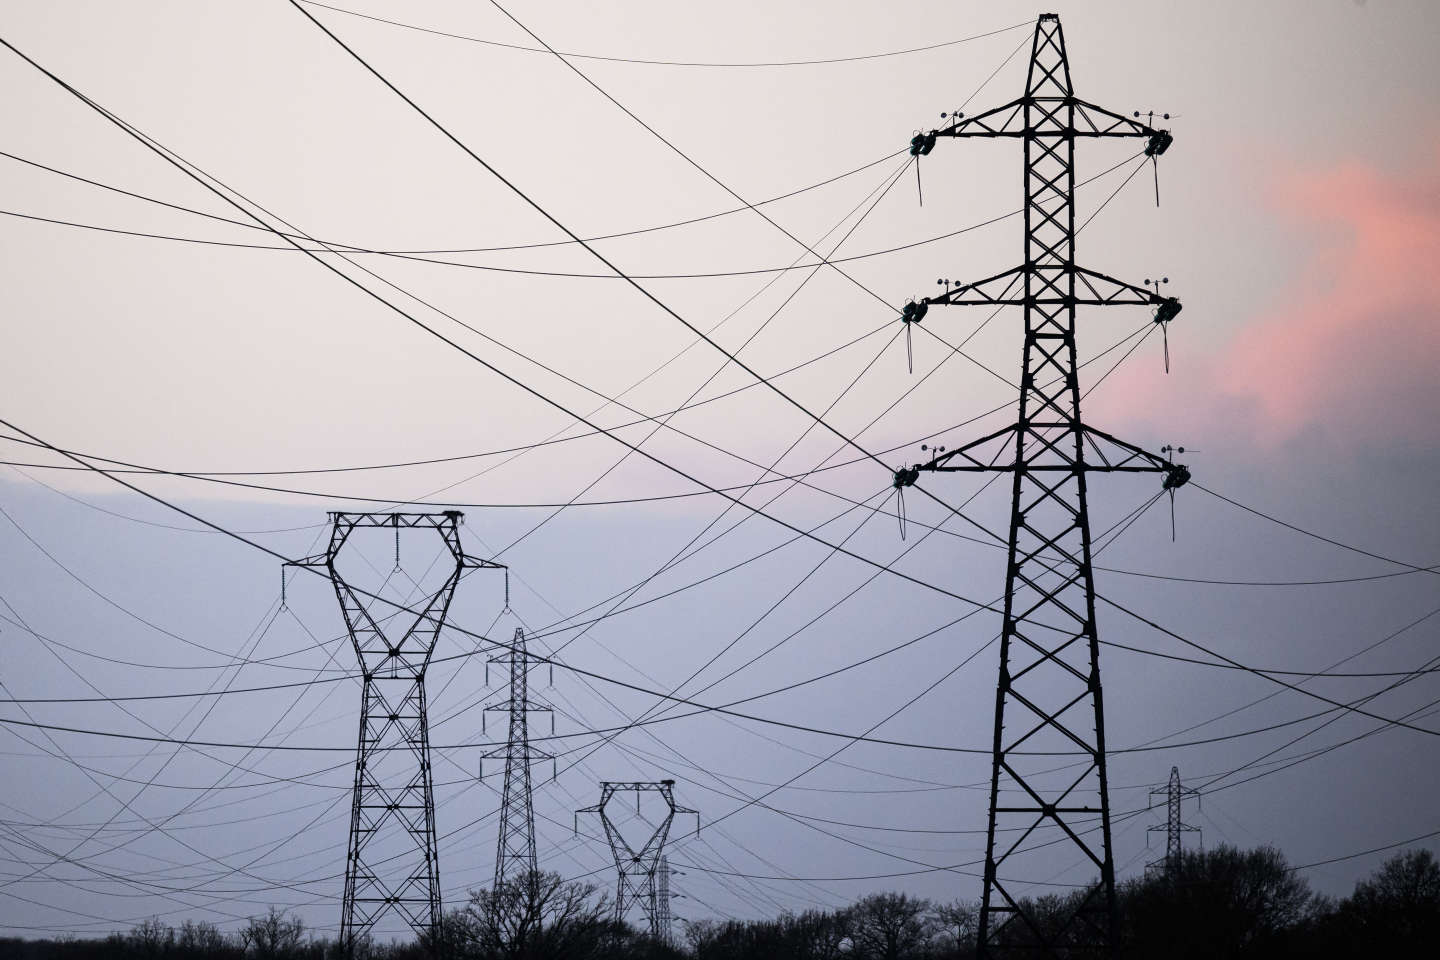 La menace de coupures d’électricité cet hiver « semble s’écarter », selon le gouvernement